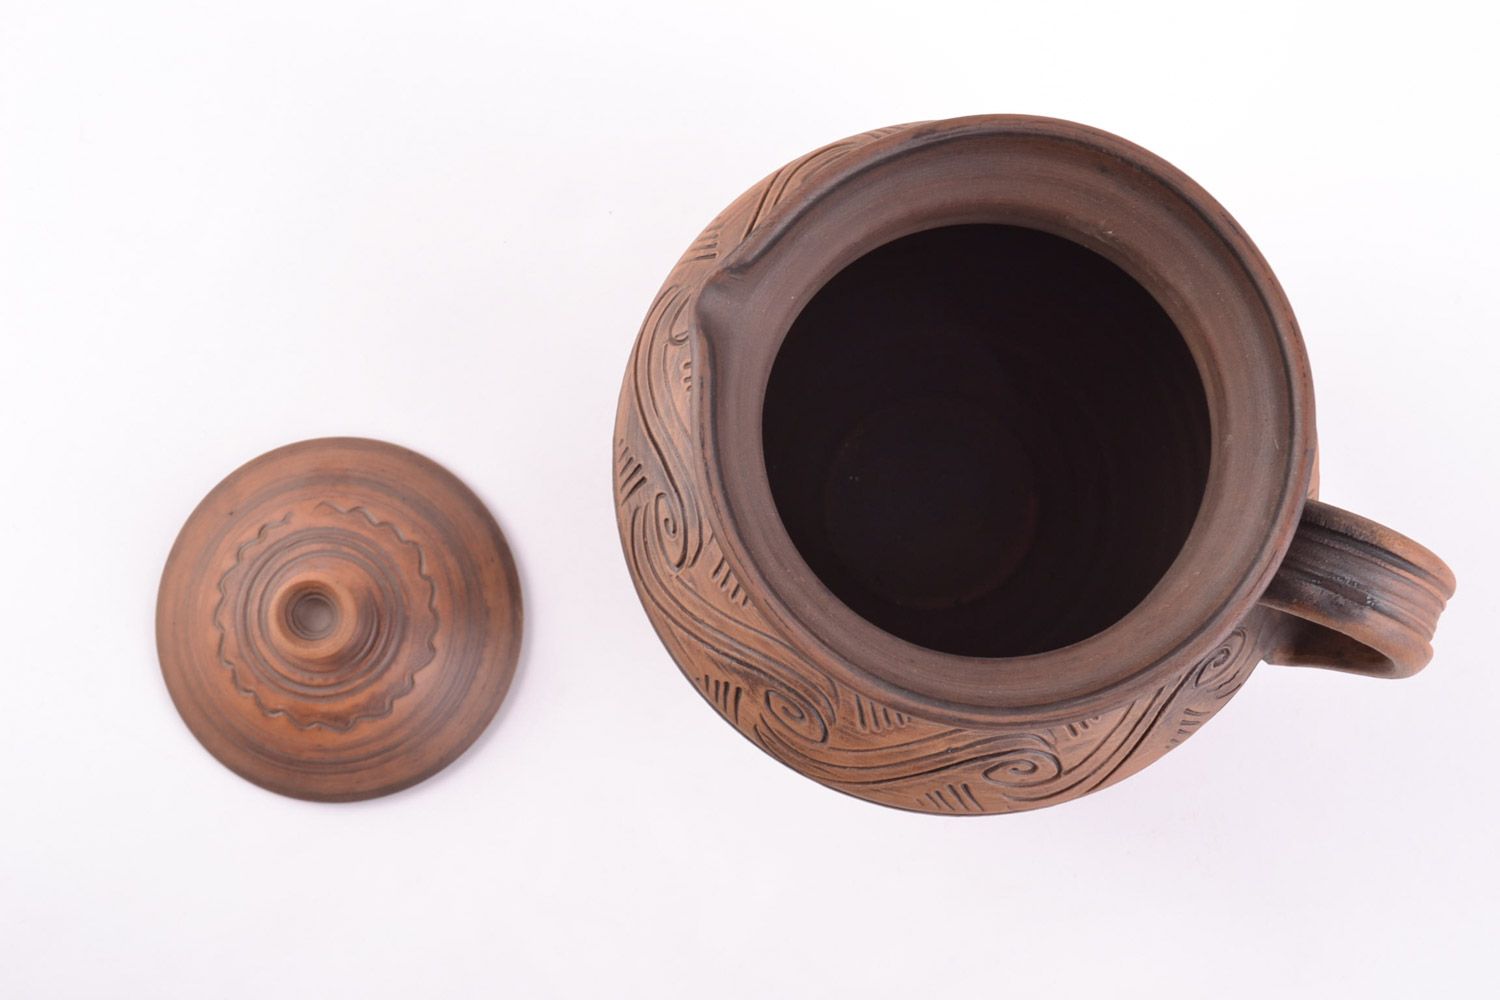 Handmade Keramik Krug aus Ton mit Muster in Braun schön ethnisch 2 Liter foto 3